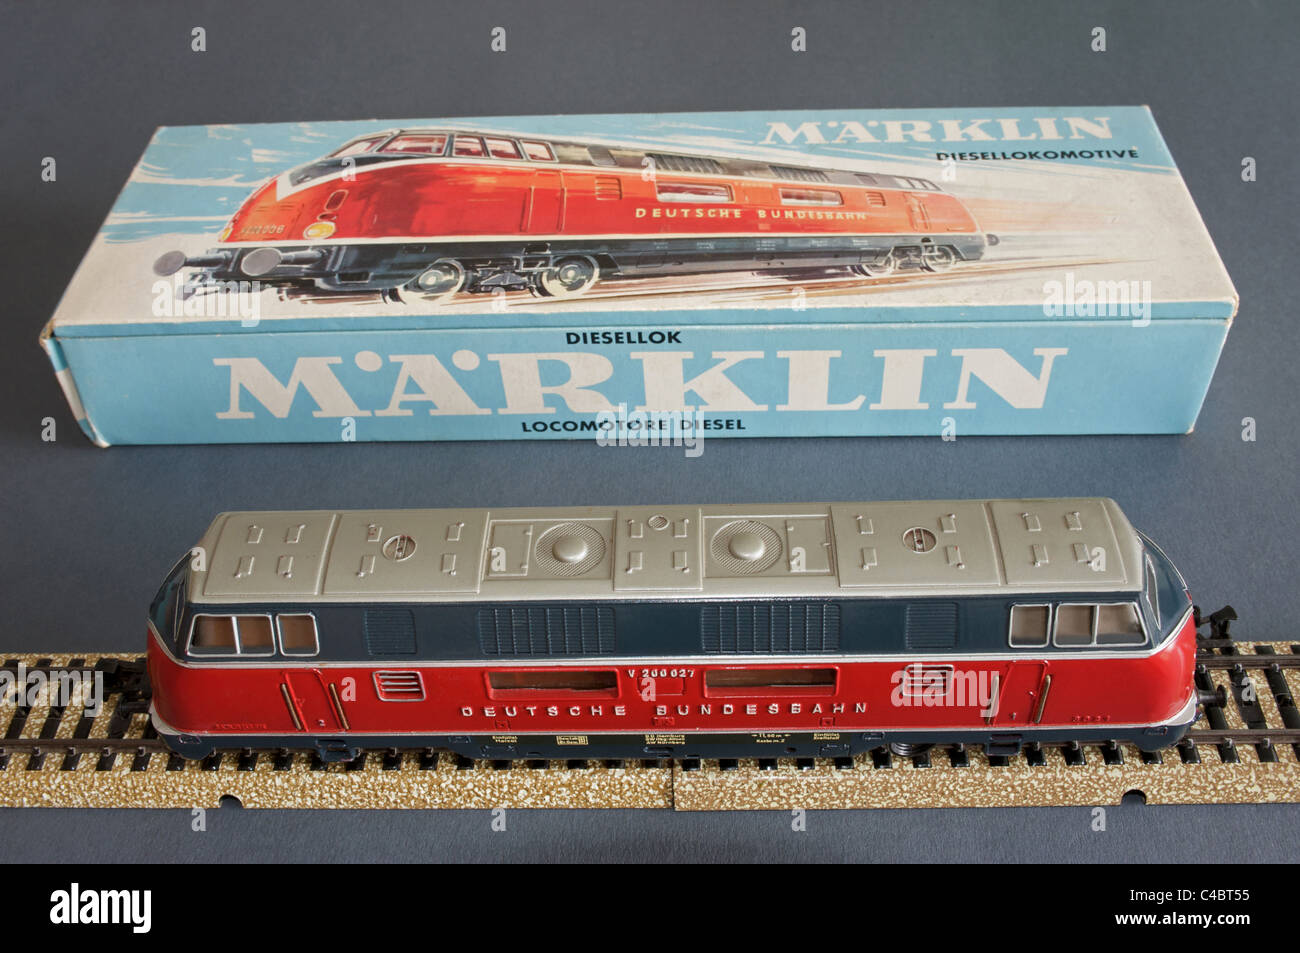 Marklin modelleisenbahn -Fotos und -Bildmaterial in hoher Auflösung – Alamy